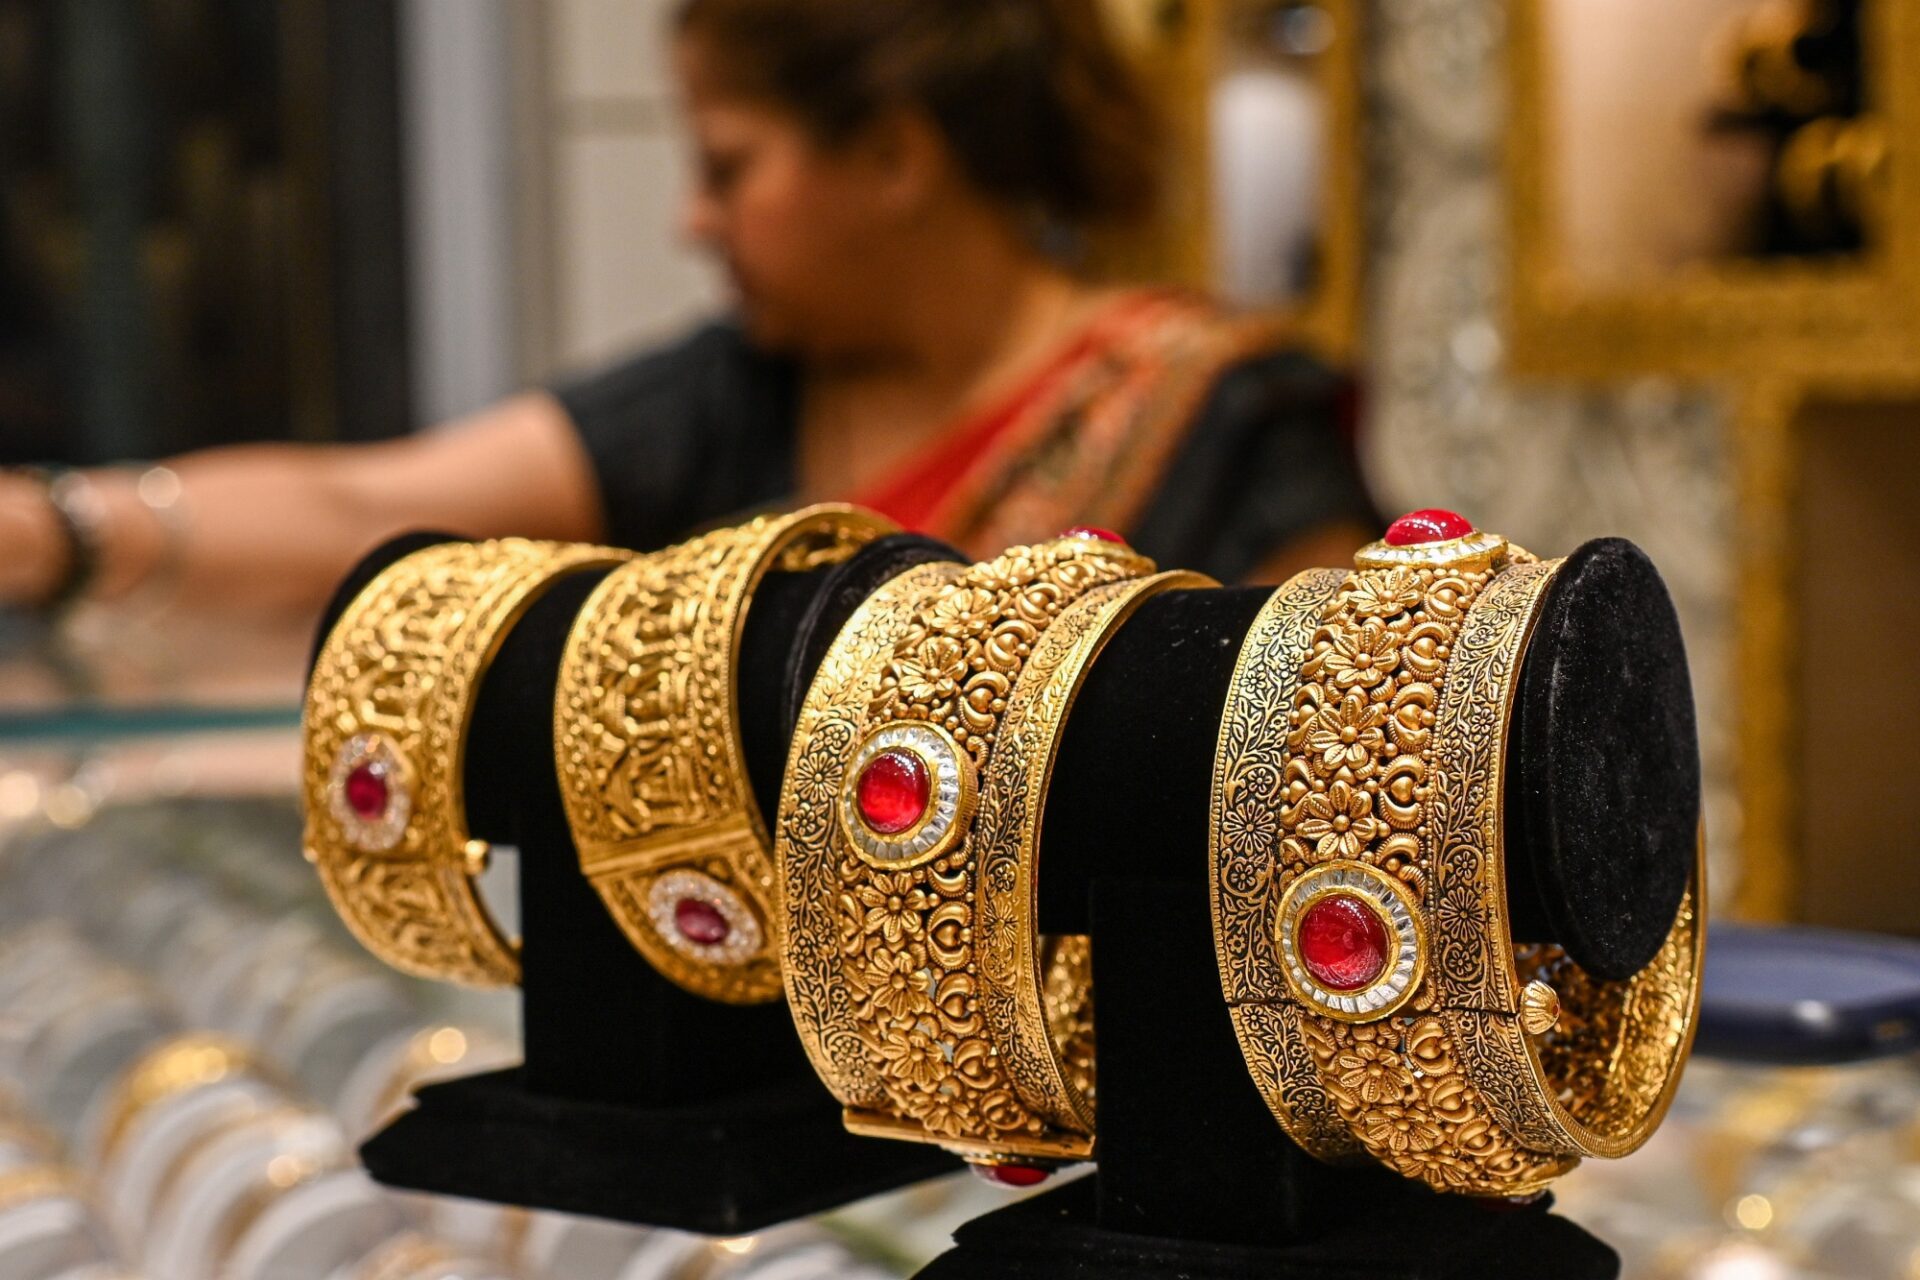 Tâm điểm thị trường: Giá vàng tăng vọt sẽ làm giảm nhu cầu cưới ở Ấn Độ